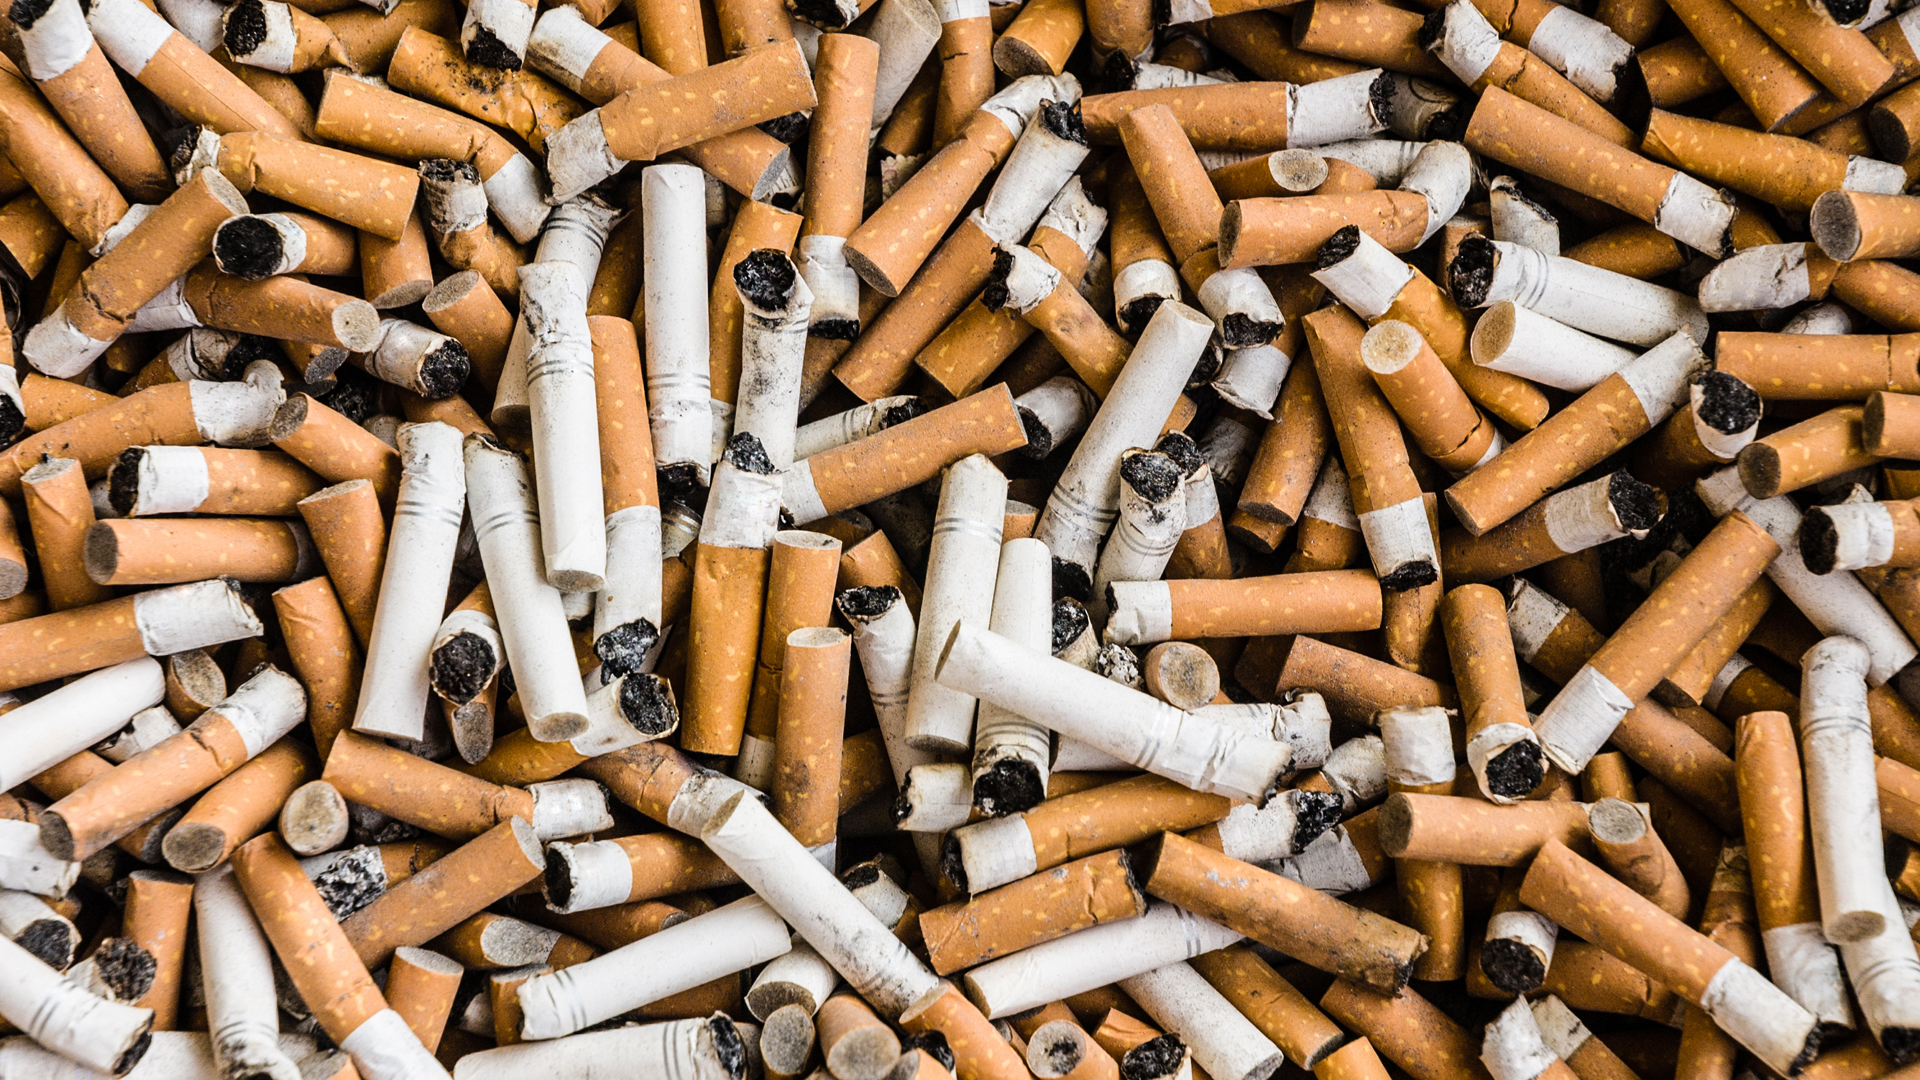 "Aproximadamente 4,5 mil millones de filtros de cigarrillos contaminan cada año nuestros océanos, ríos, veredas de las ciudades, parques, suelos y playas”, dijo el doctor Ruediger Krech, director de Promoción de la Salud de la OMS / Getty